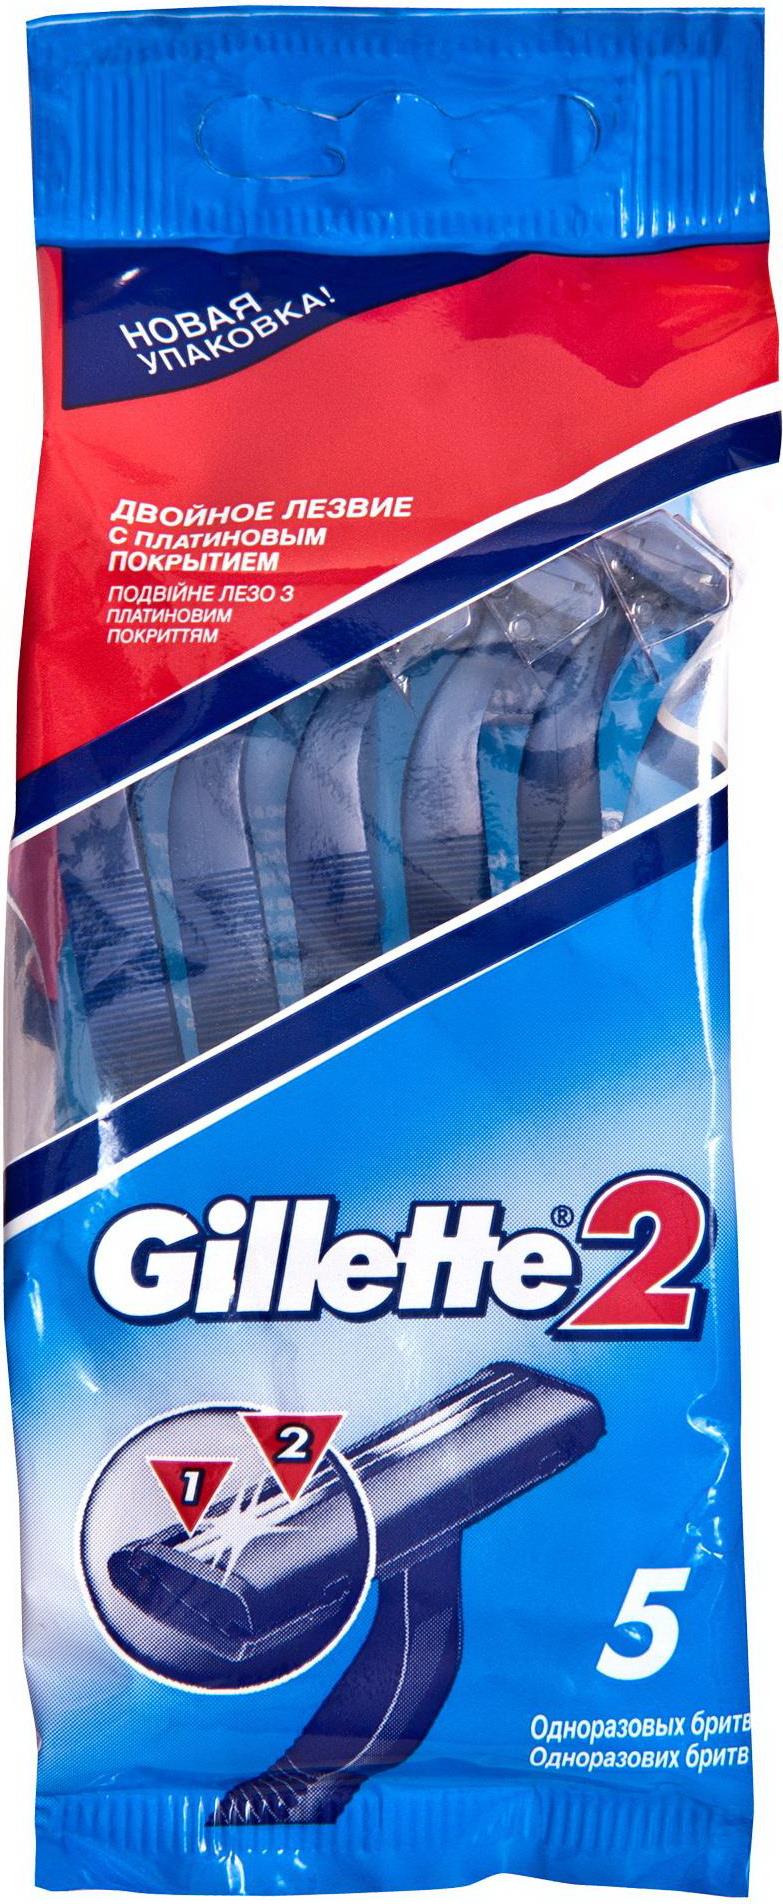 Станок для бритья Gillette 2 одноразовый